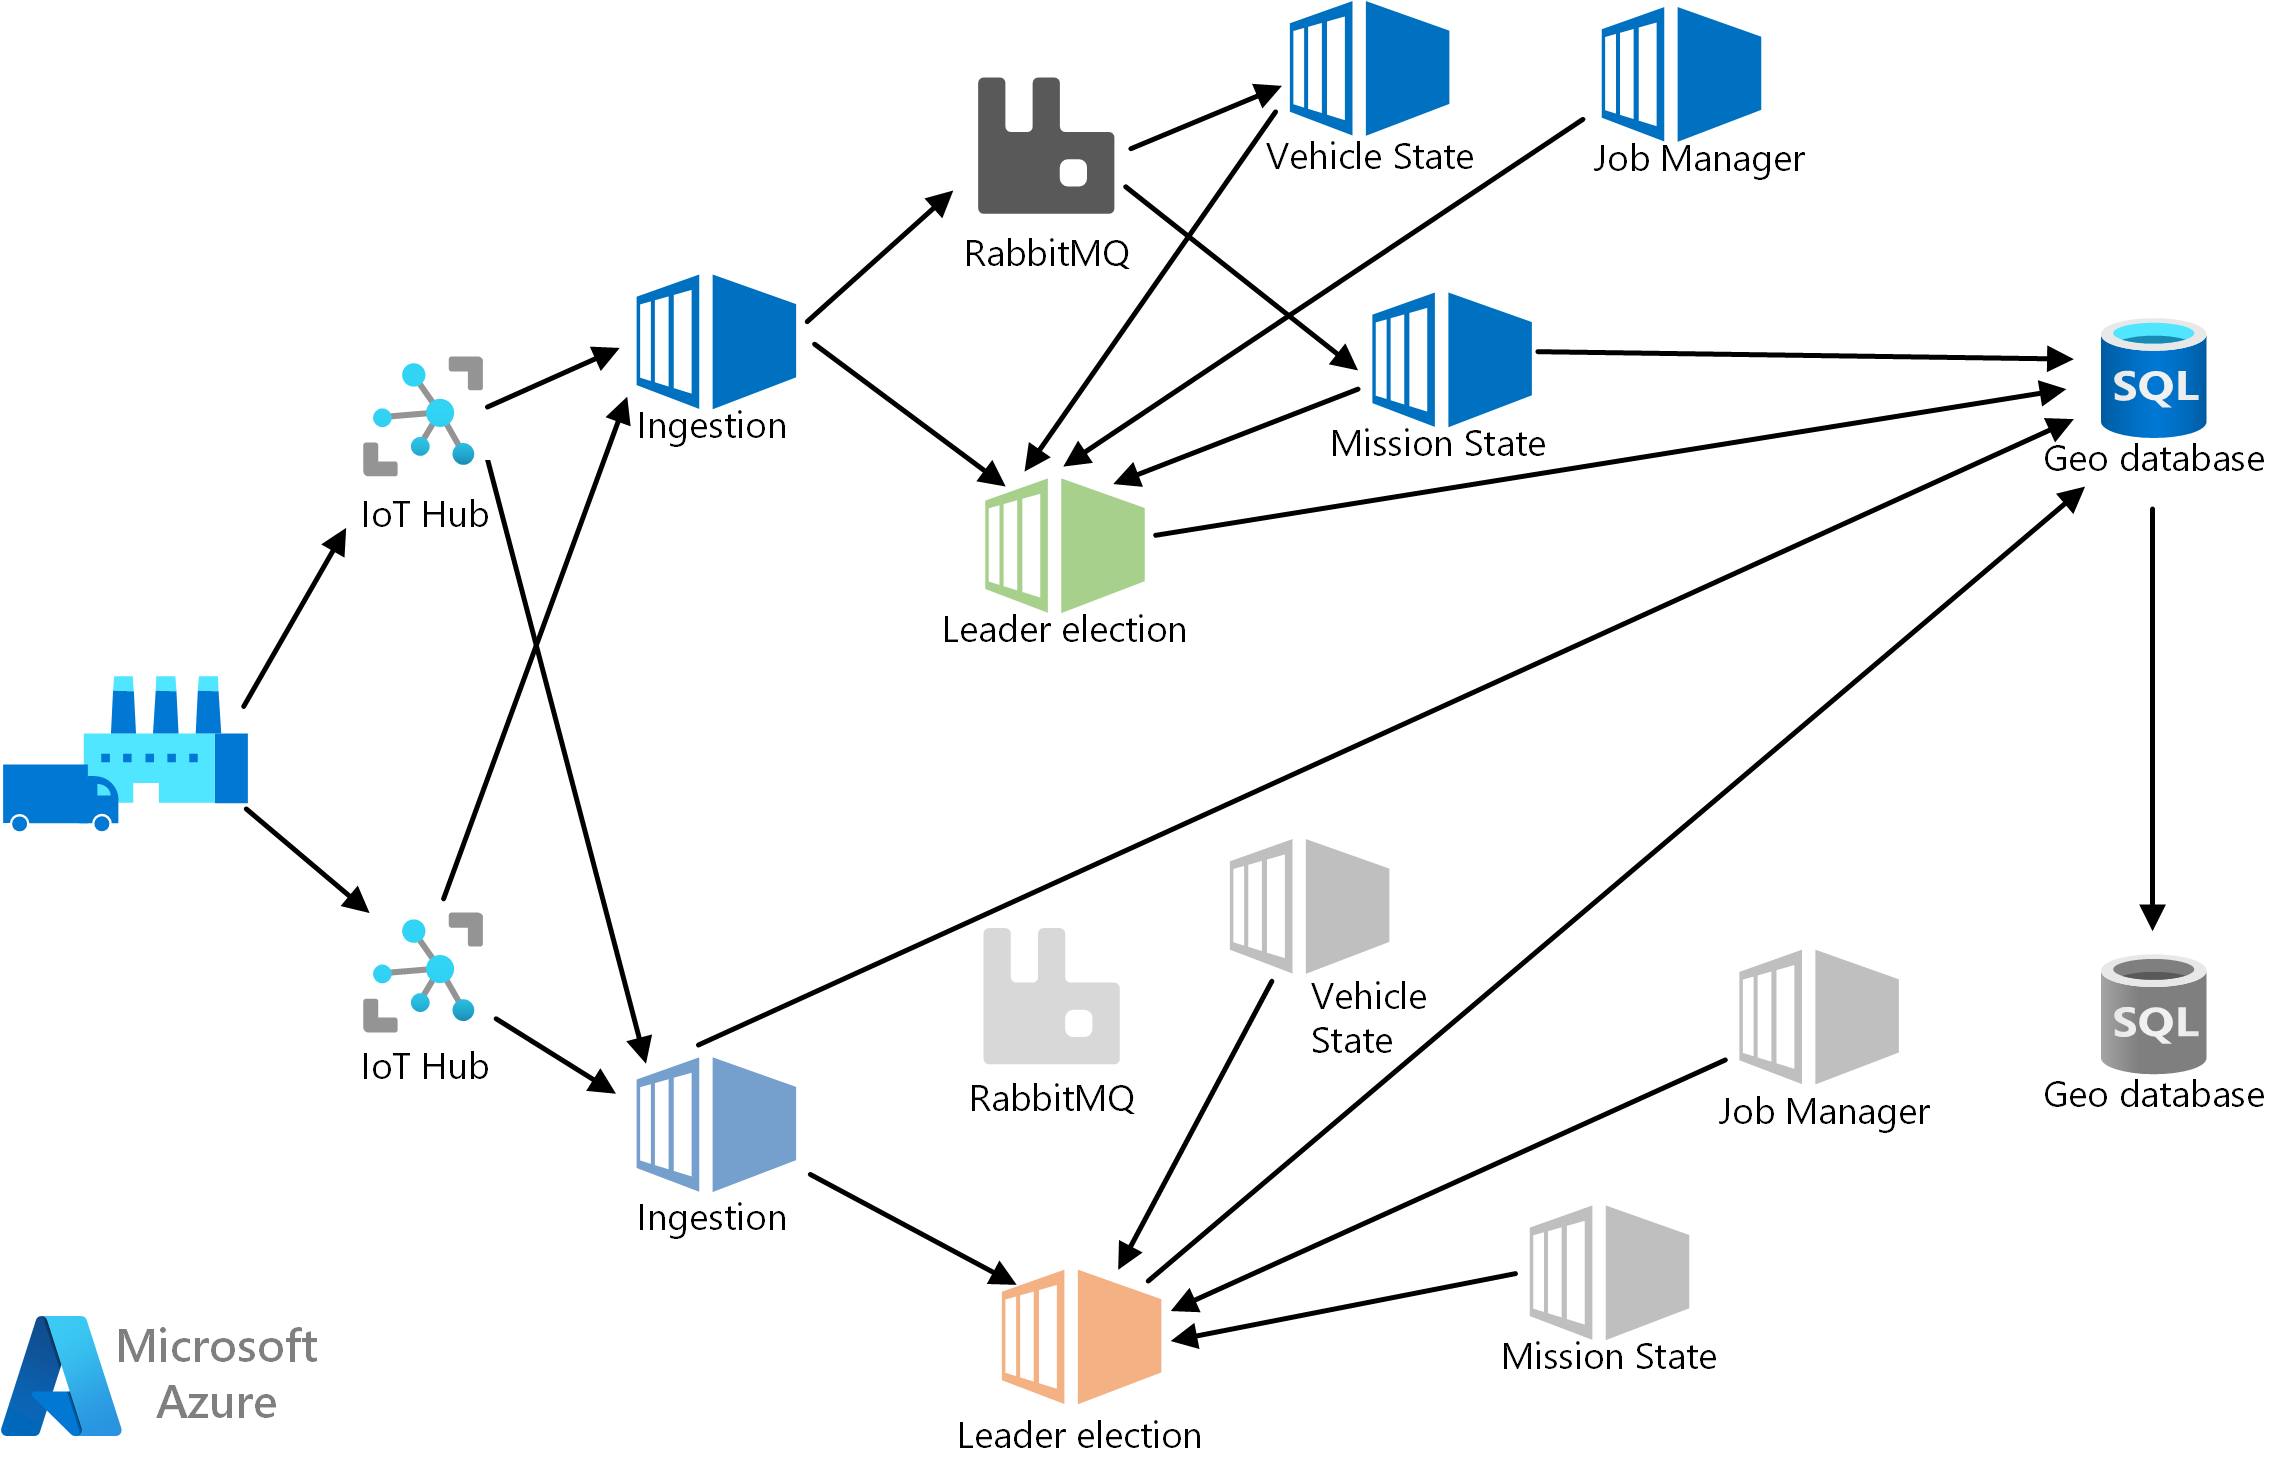 Skärmbild av en instans av serverdelen, som består av följande komponenter, distribueras till två Azure-regioner: Azure IoT Hub, Ingestion, RabbitMQ, Mission State, Vehicle State, Job Manager och Geo DB.